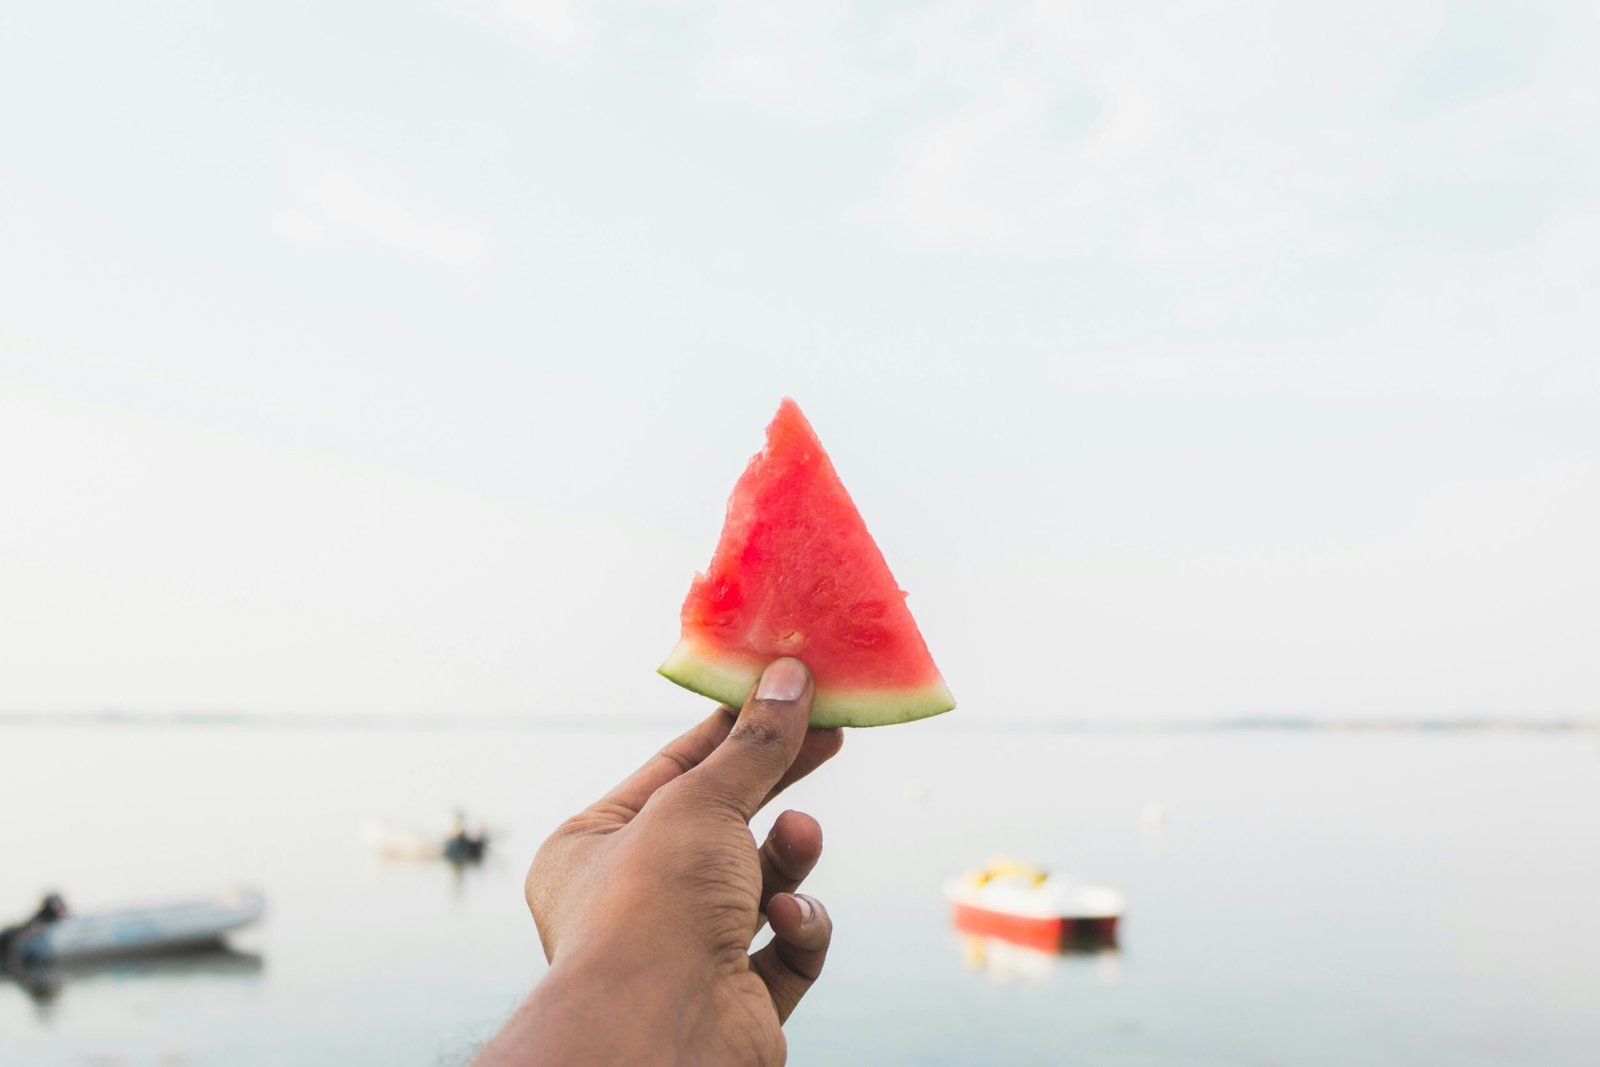 Entdecken Sie den besten Wassermelonenschneider zum mühelosen Schneiden und Servieren köstlicher Wassermelonen. Machen Sie das Schneiden von Wassermelonen mit unserem hochwertigen Schneider zum Kinderspiel.